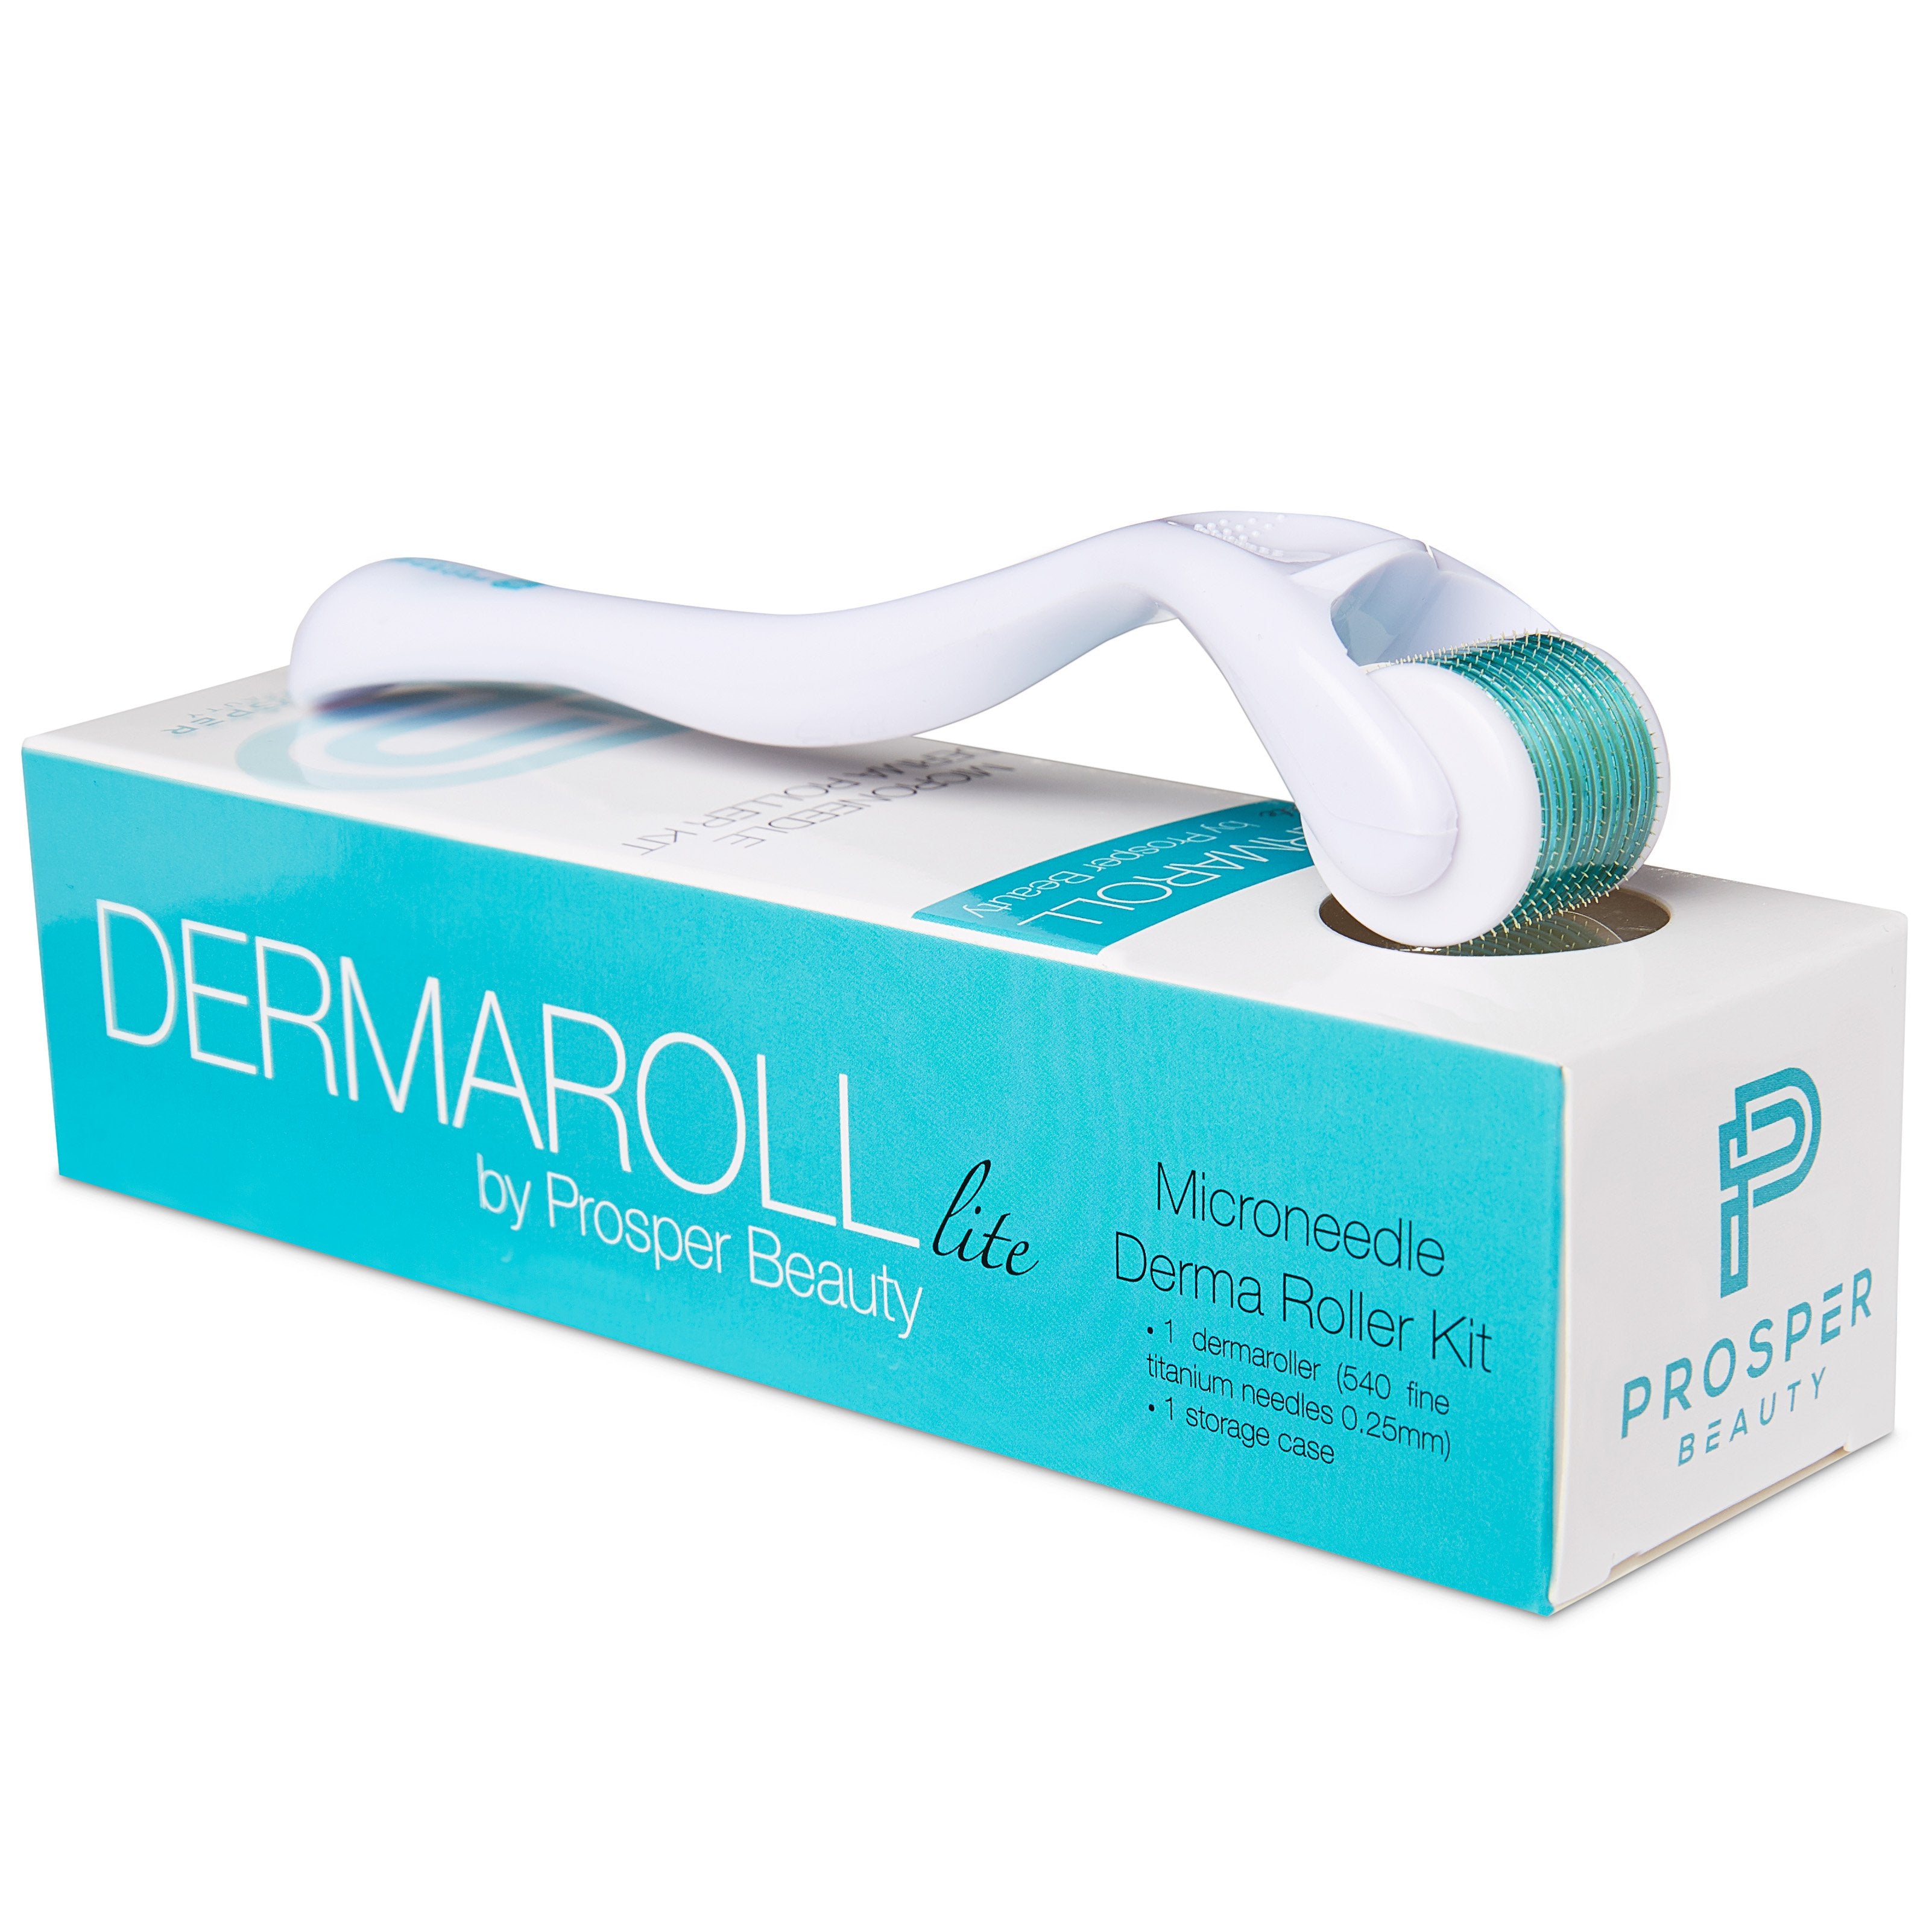 DERMAROLL LITE by Prosper Beauty (Microneedle Derma Roller Kit 0.25mm)